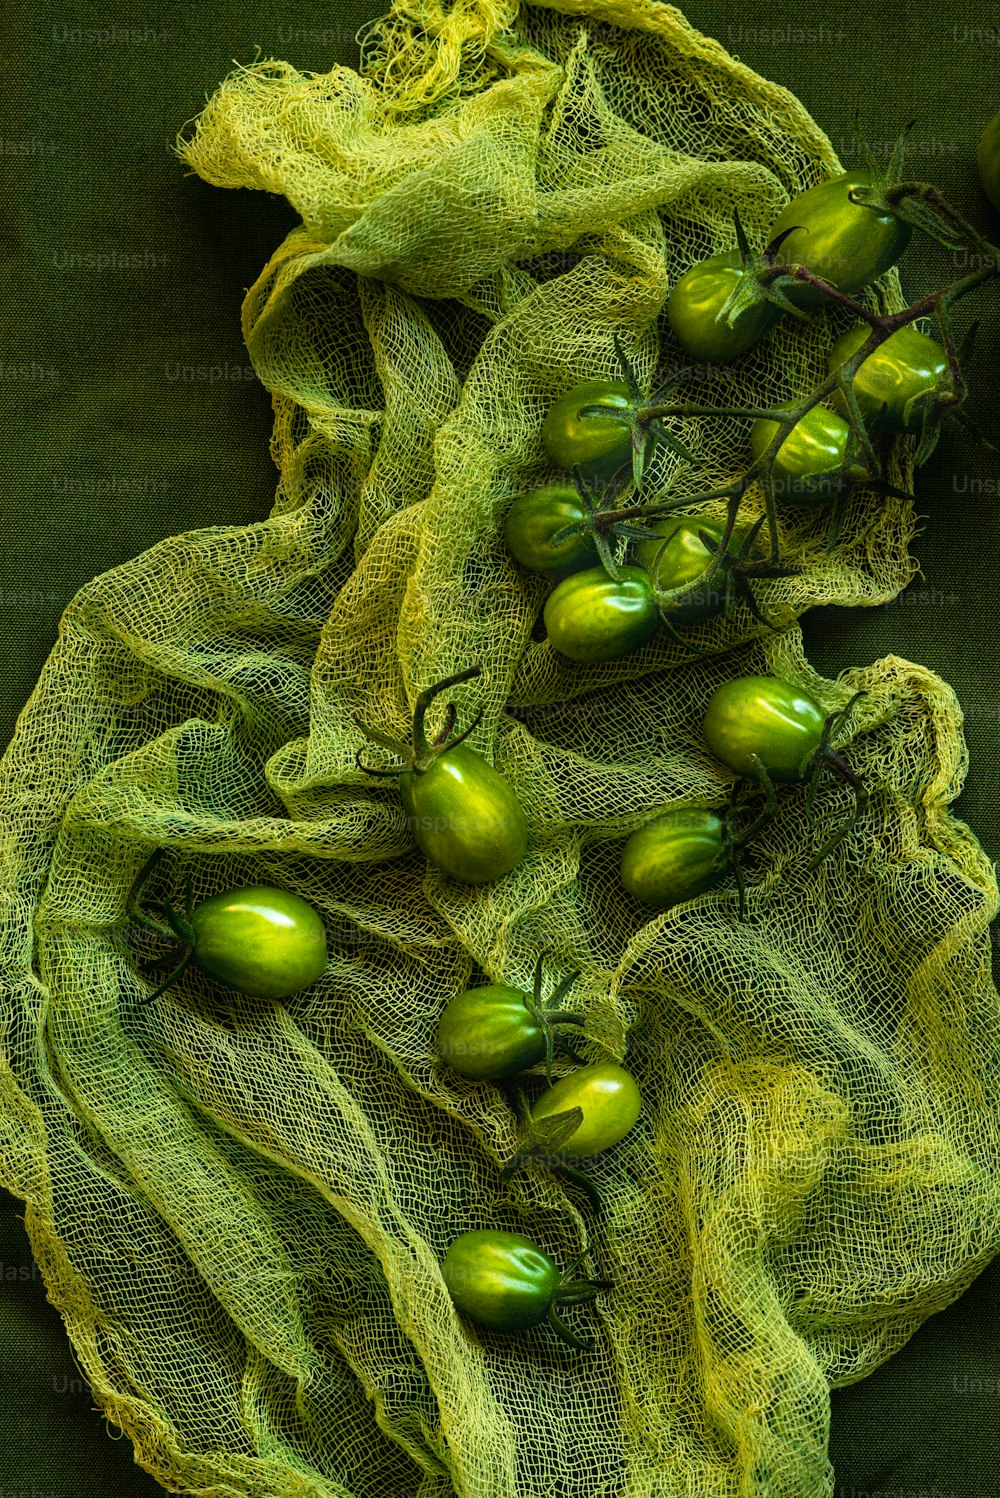 緑の布の上に座っている緑色のトマトの束